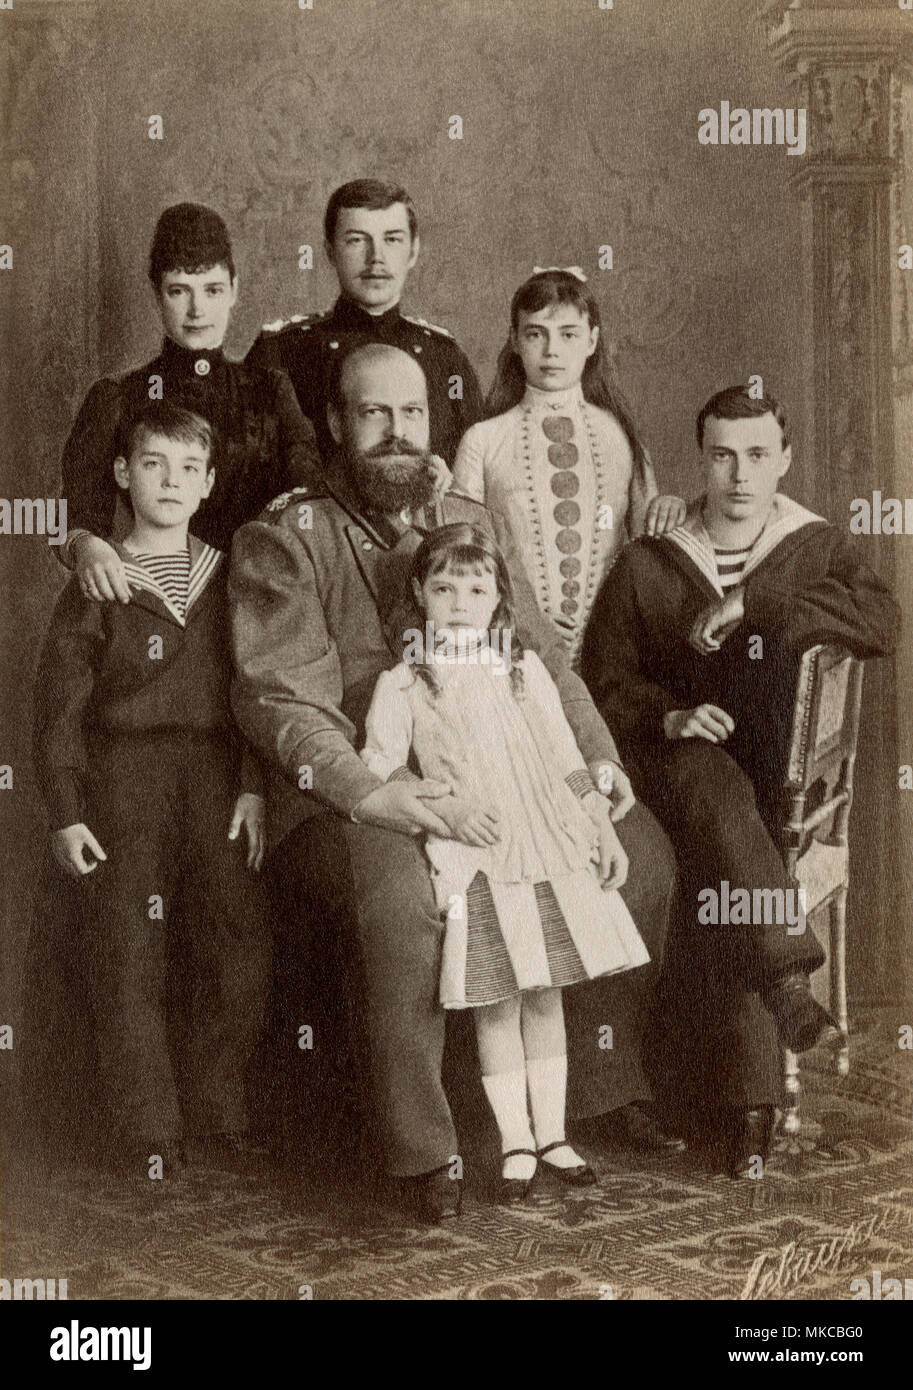 El zar ruso Alejandro III y su familia, incluyendo el futuro zar Nicolás II en la parte trasera,1890. Fotografía Foto de stock